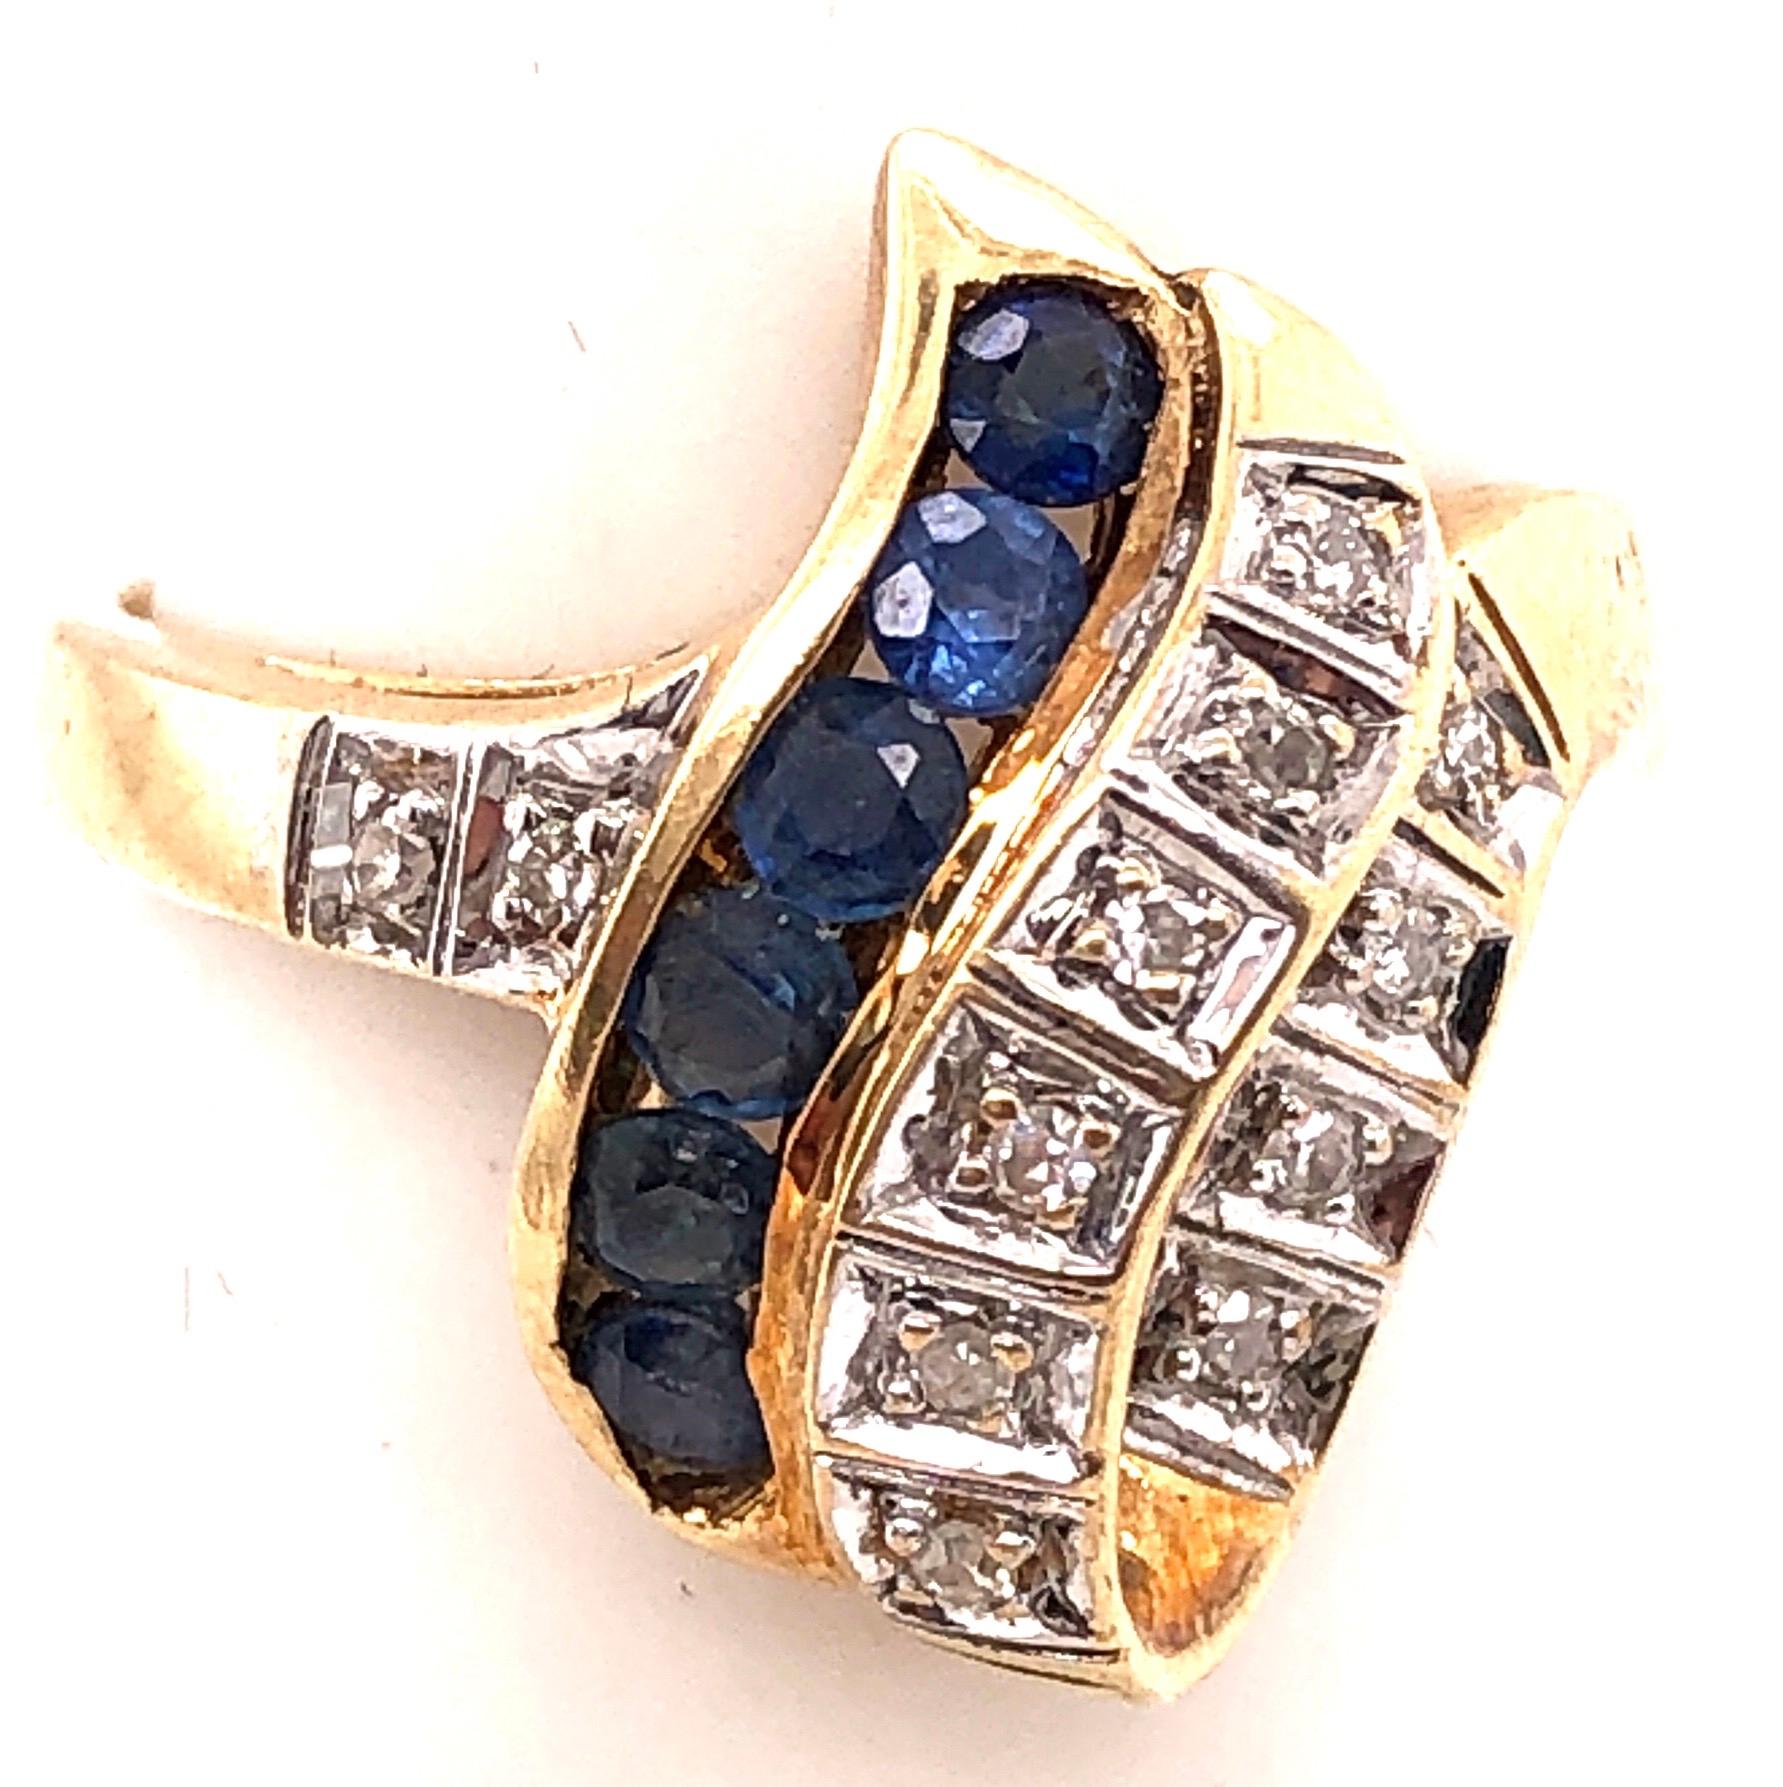 zeitgenössischer Ring aus 14 Karat Gelb- und Weißgold mit blauem Saphir und Diamant 
Größe 6.5 
3.80 Gramm Gesamtgewicht.